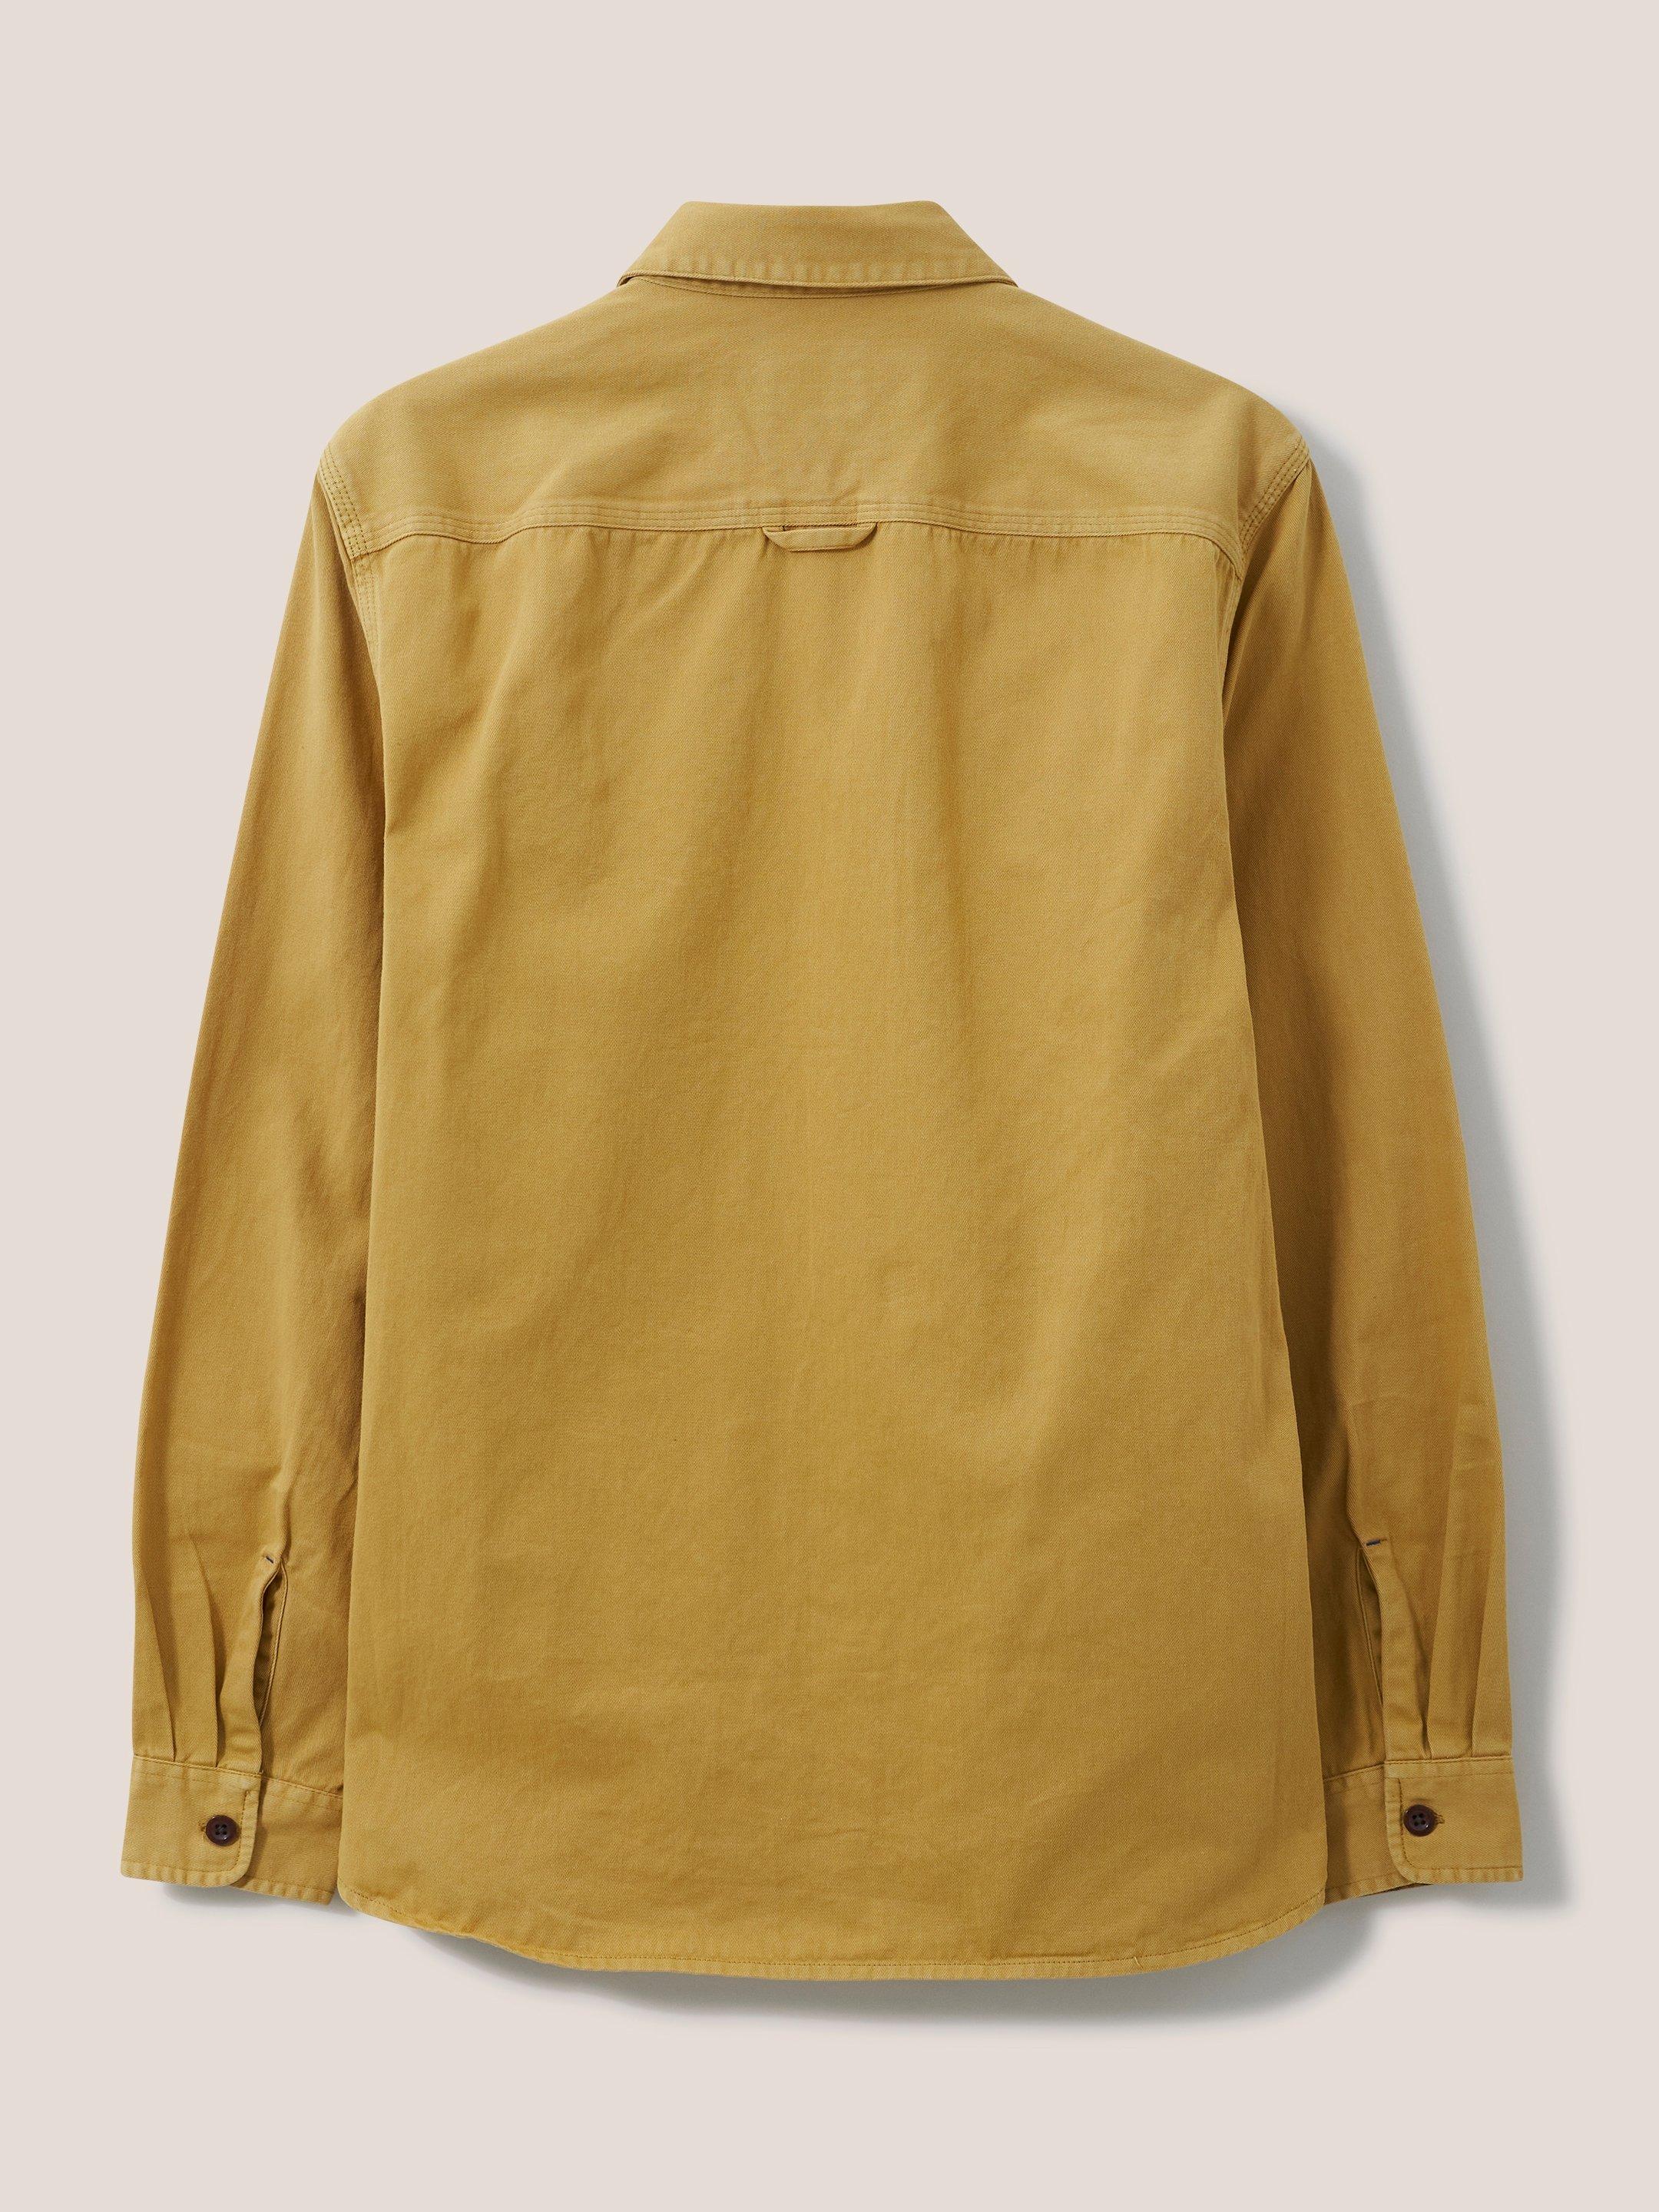 Furze Garment Dye Twill Shirt in DP YELLOW - FLAT BACK